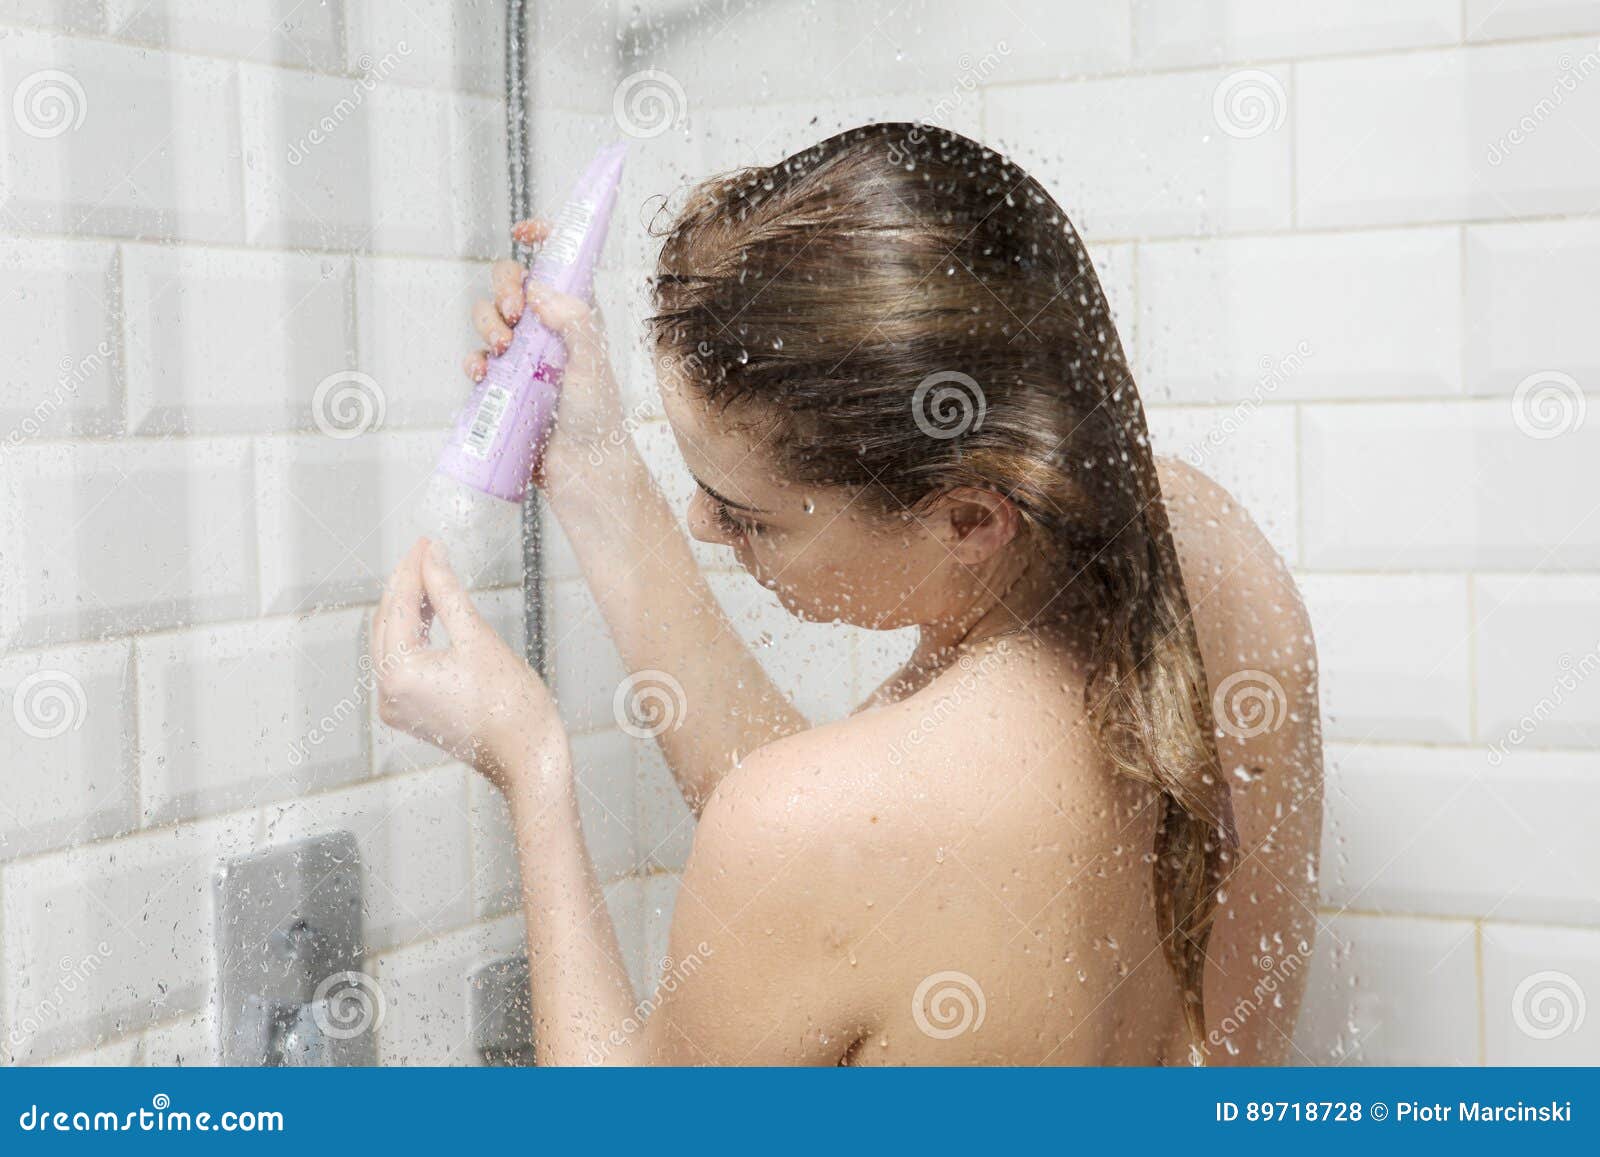 In der dusche frau nackt Nackte Girls